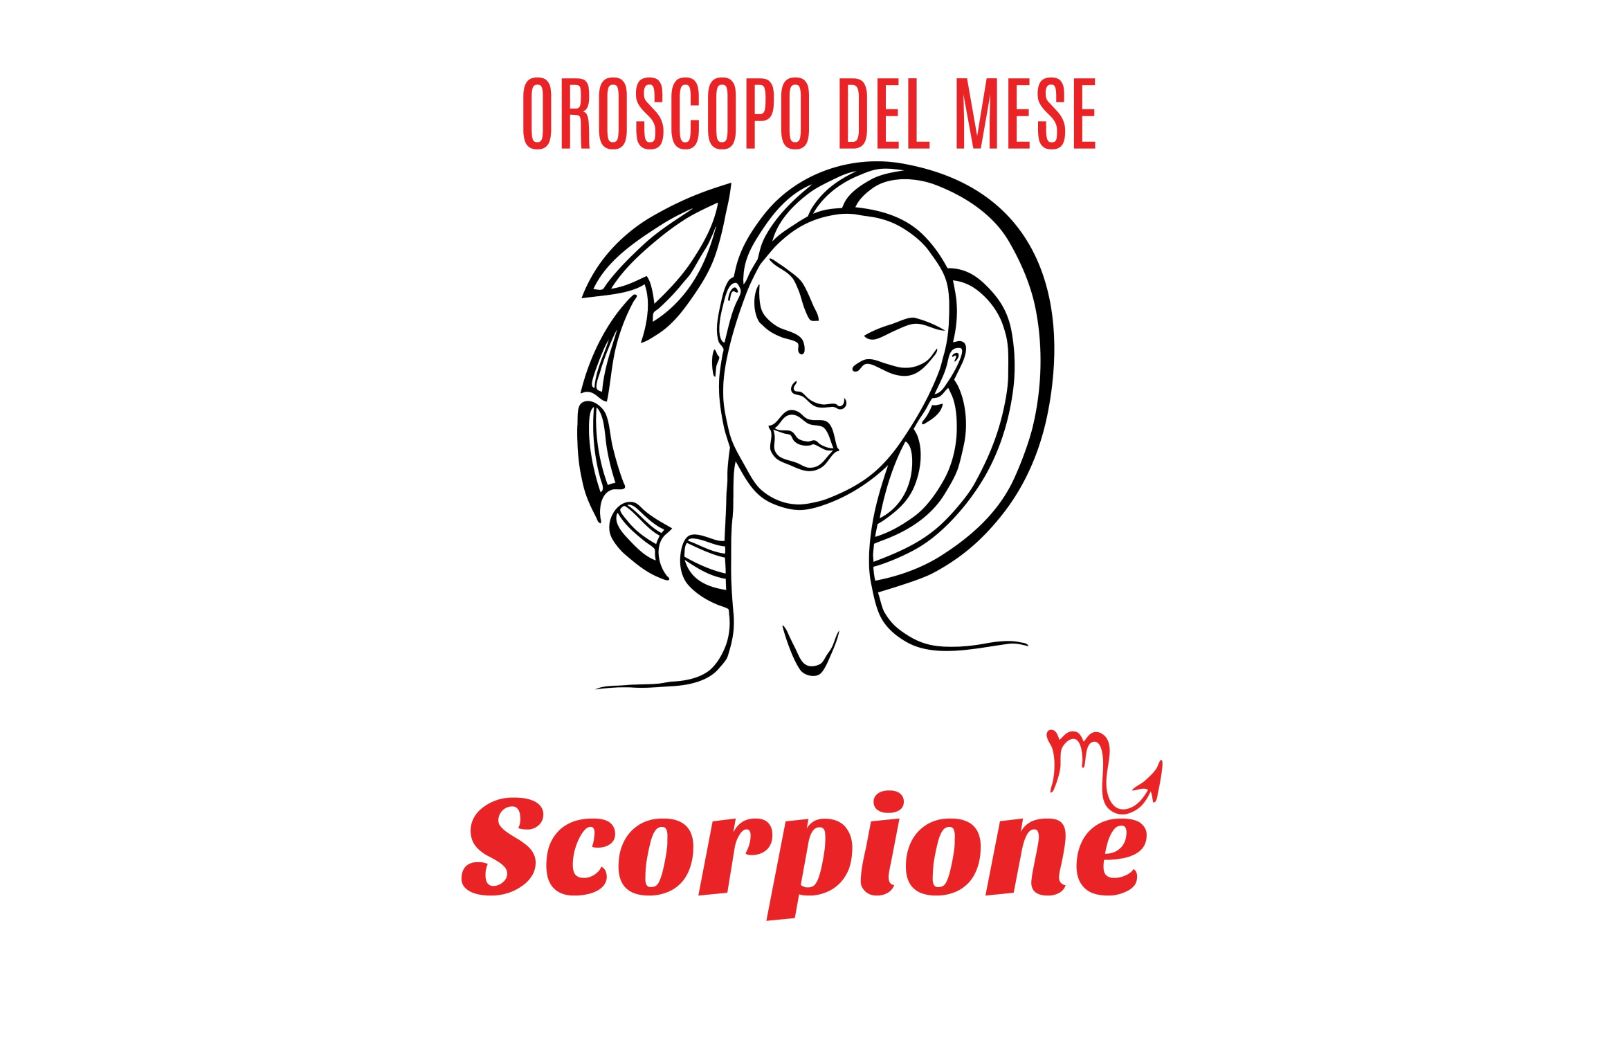 Oroscopo del mese: Scorpione - marzo 2018